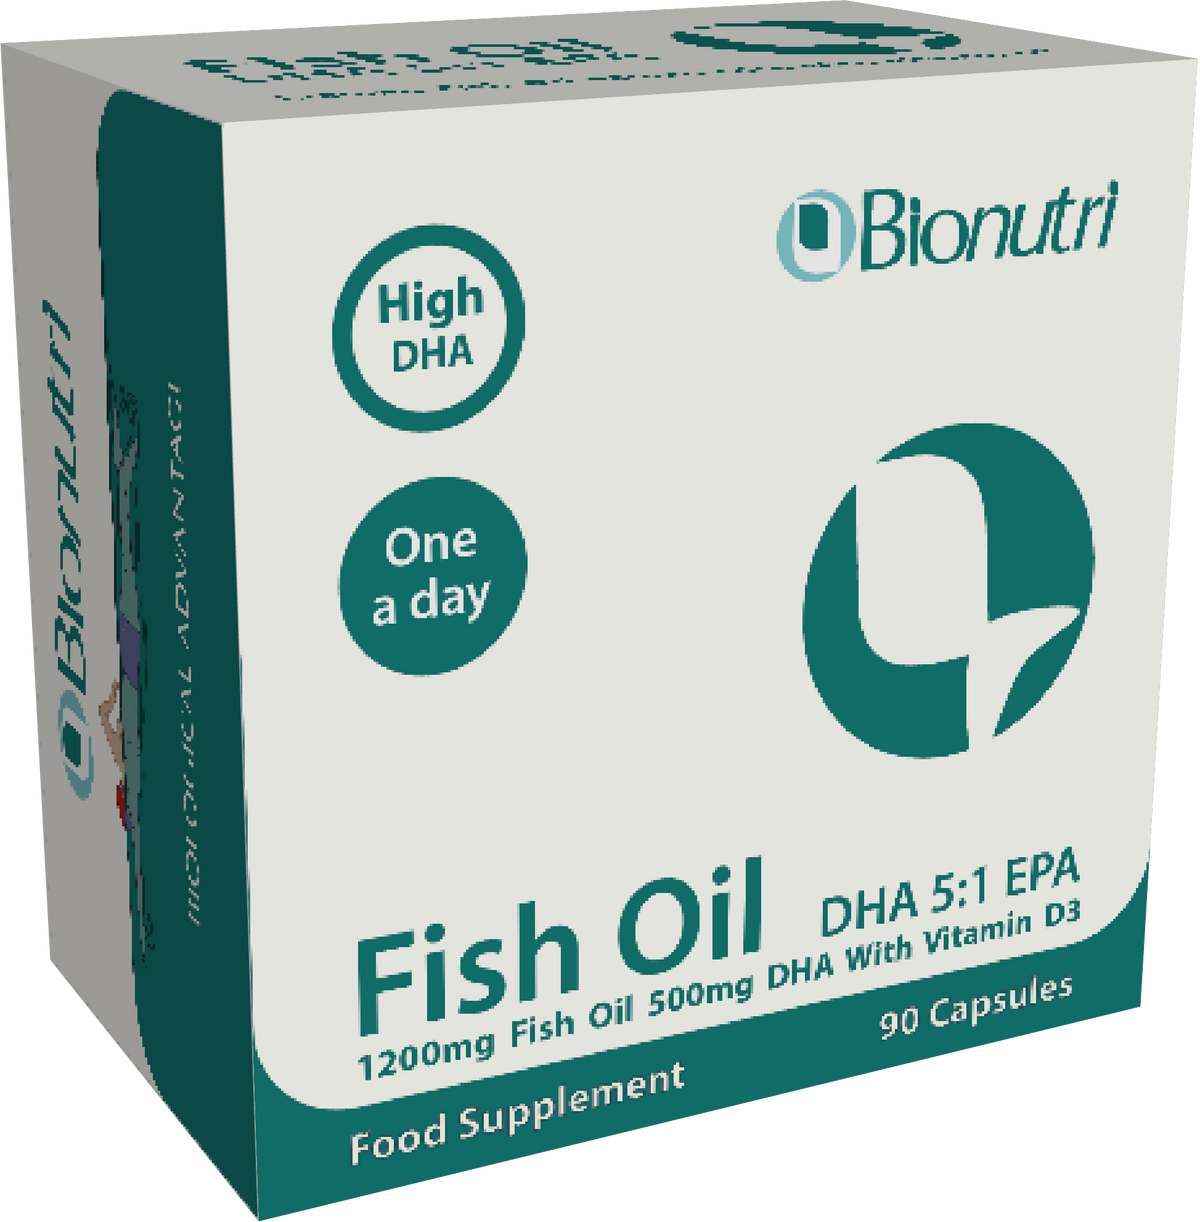 BioNutri Fish Oil DHA 5:1 EPA 90Capsules